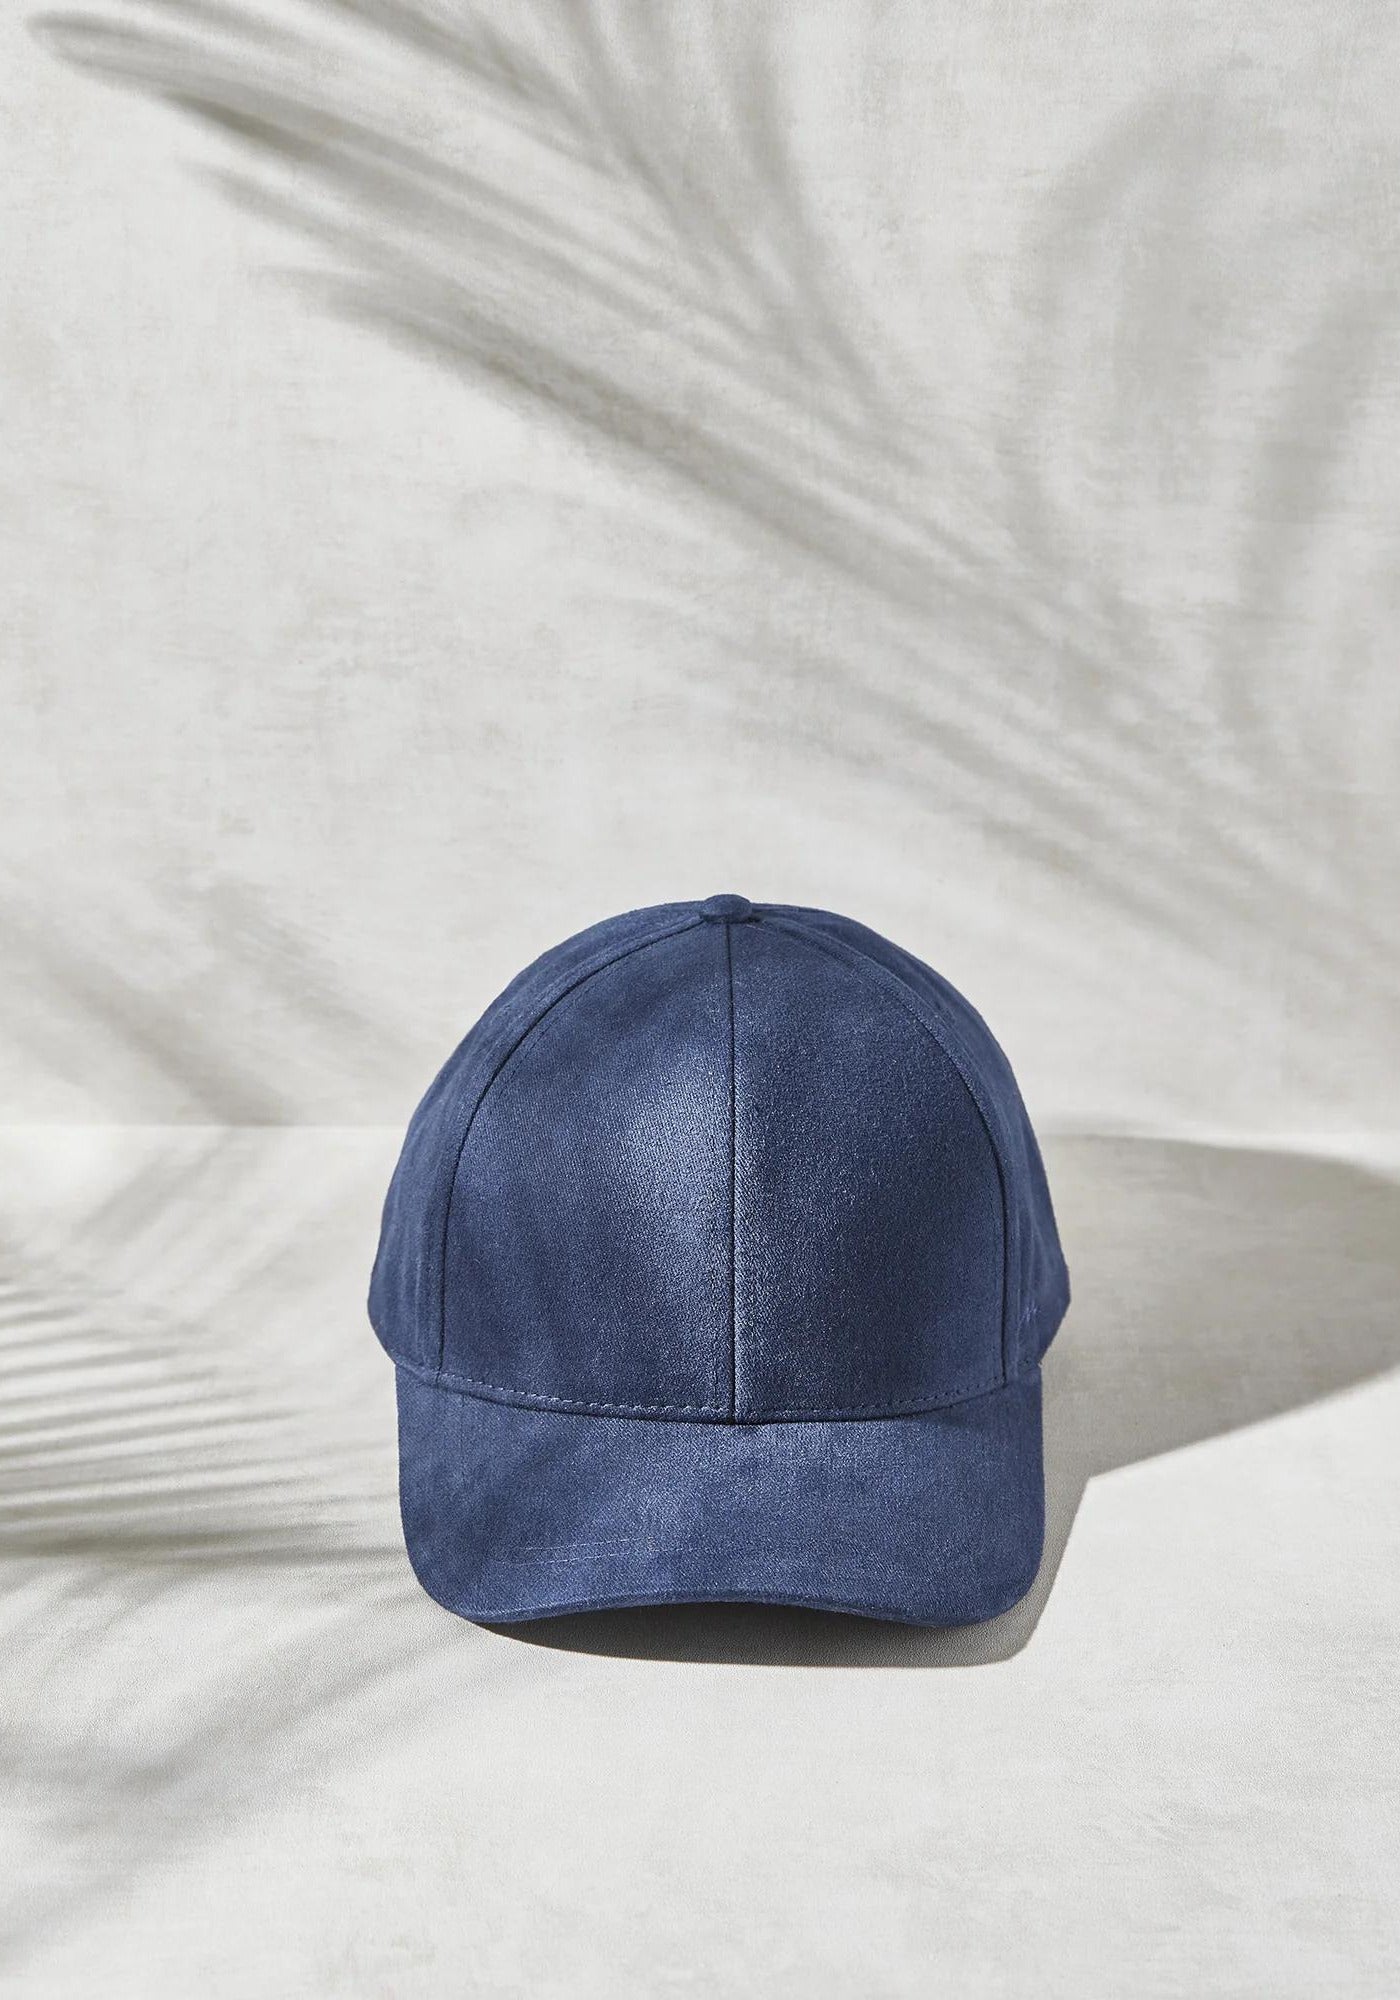 La casquette mixte brodée L'élégant Bleu Marine de chez Marion Paris